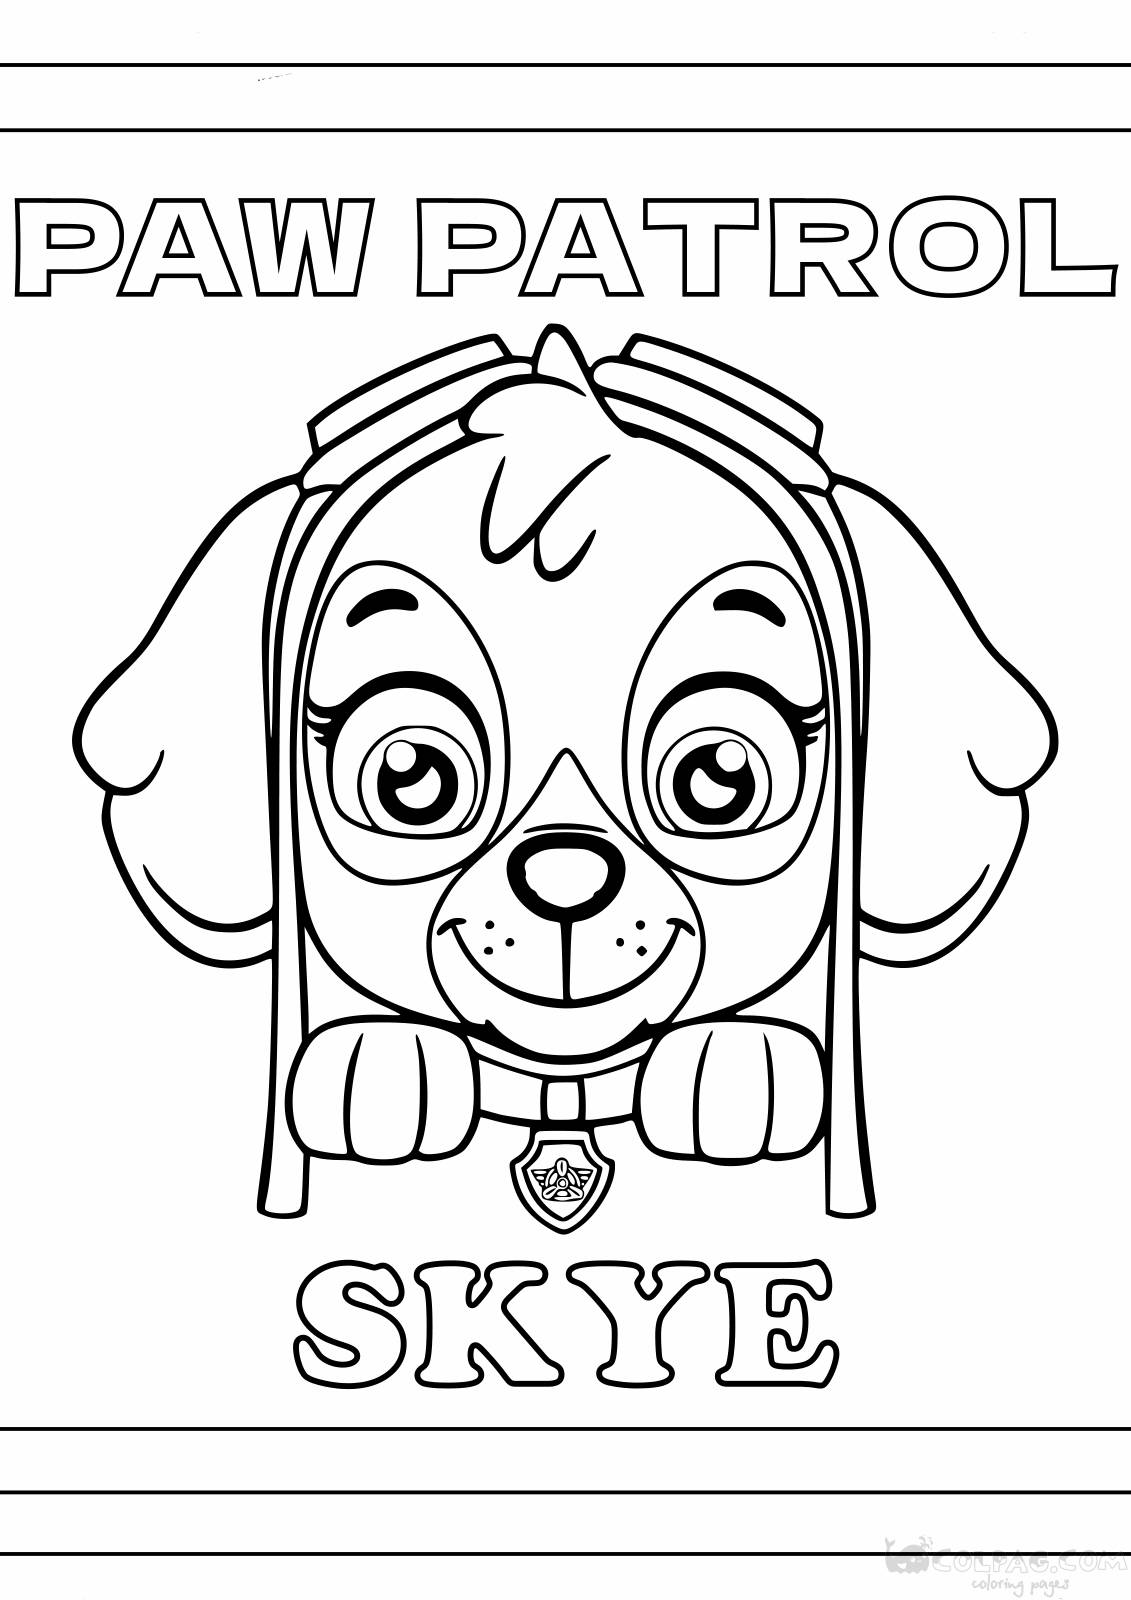 Disegni da colorare di Skye dei Paw Patrol